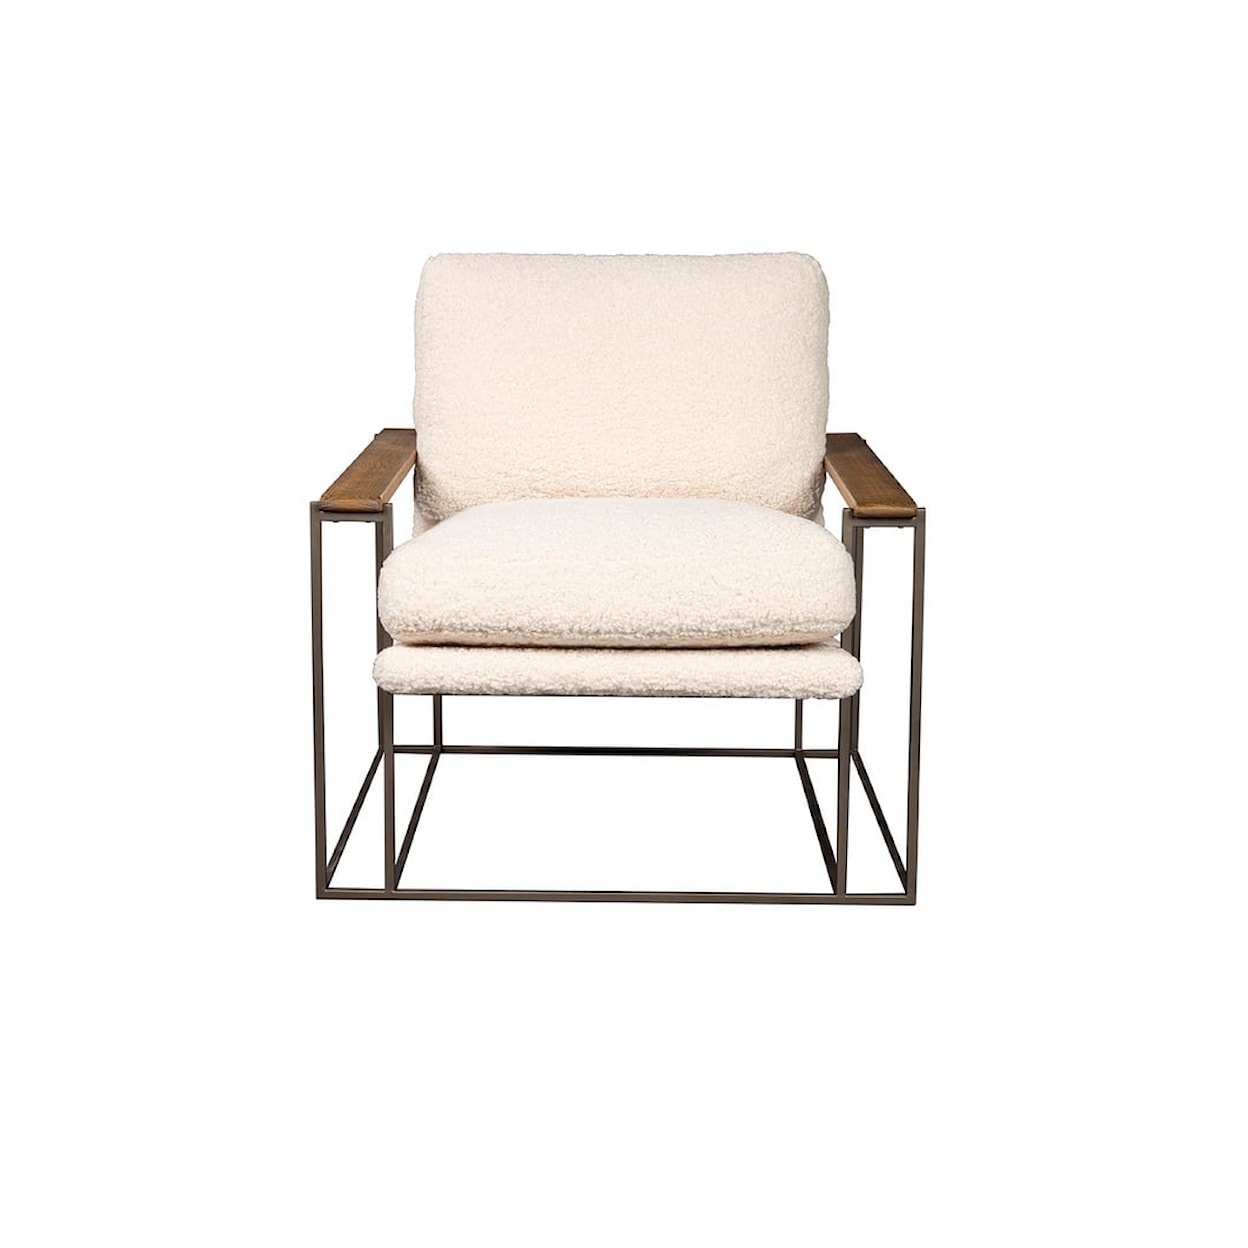 Furniture Classics Furniture Classics Roeder Arm Chair